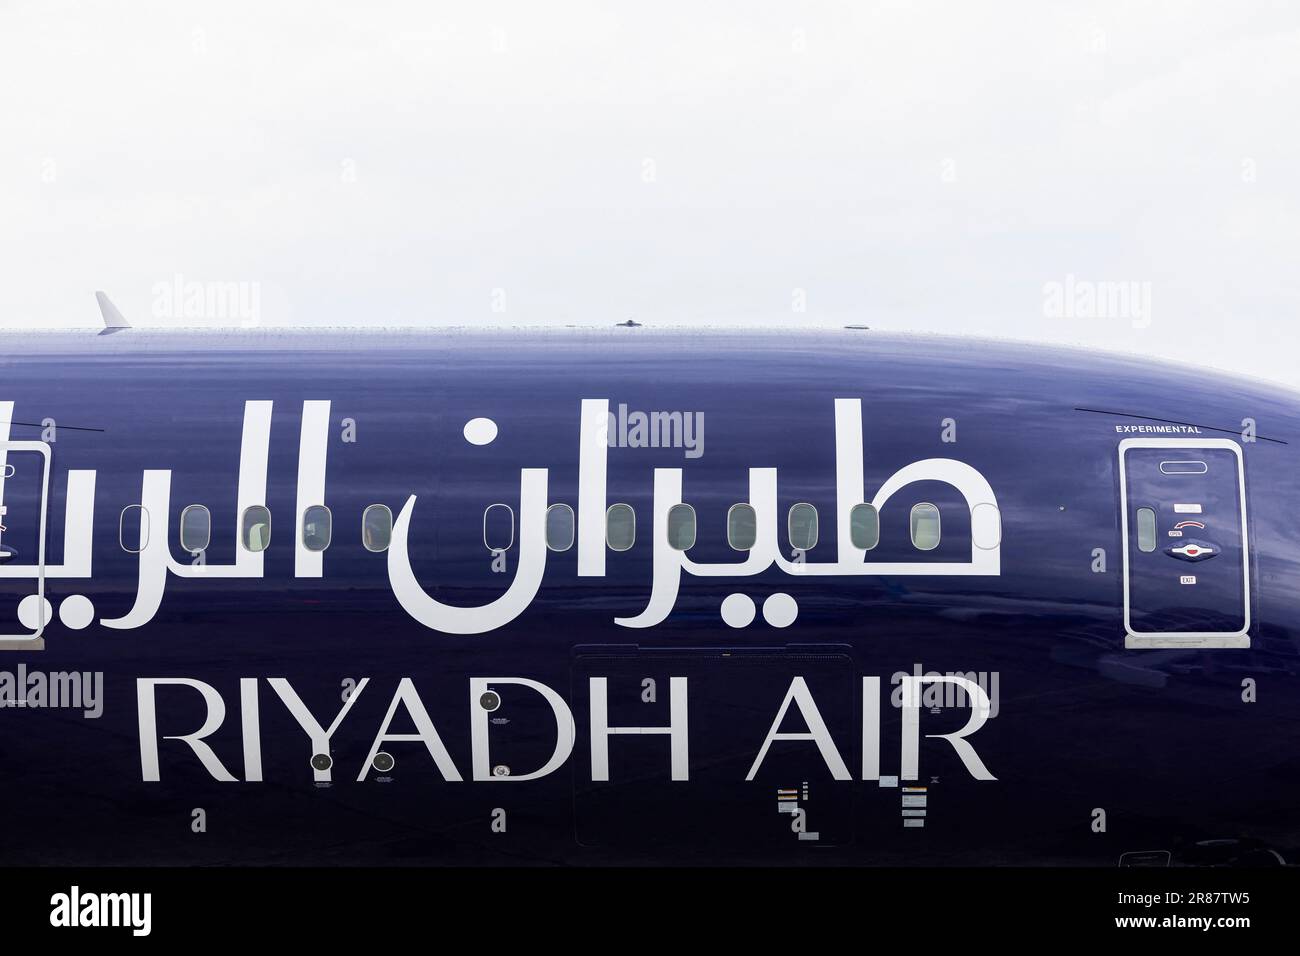 Riyadh Air ist eine geplante Fluggesellschaft unter der zweiten Flagge Saudi-Arabiens mit Sitz in der Hauptstadt Riad. Der Hauptstandort der Fluggesellschaft wird der King Khalid International Airport in Riad sein. Die Fluggesellschaft plant, hinsichtlich der Einnahmen die größte im Nahen Osten zu werden. Das Unternehmen wird nationale und internationale Linienflüge zu über 100 verschiedenen Zielorten im Nahen Osten, in Afrika, Asien, Europa, Südamerika und Nordamerika anbieten. Die derzeit angekündigte Flotte besteht aus Boeing 787-Flugzeugen. Le Bourget, Frankreich, 19. Juni 2023. Foto: Thomas Arnoux/ABACAPRESS.COM Stockfoto